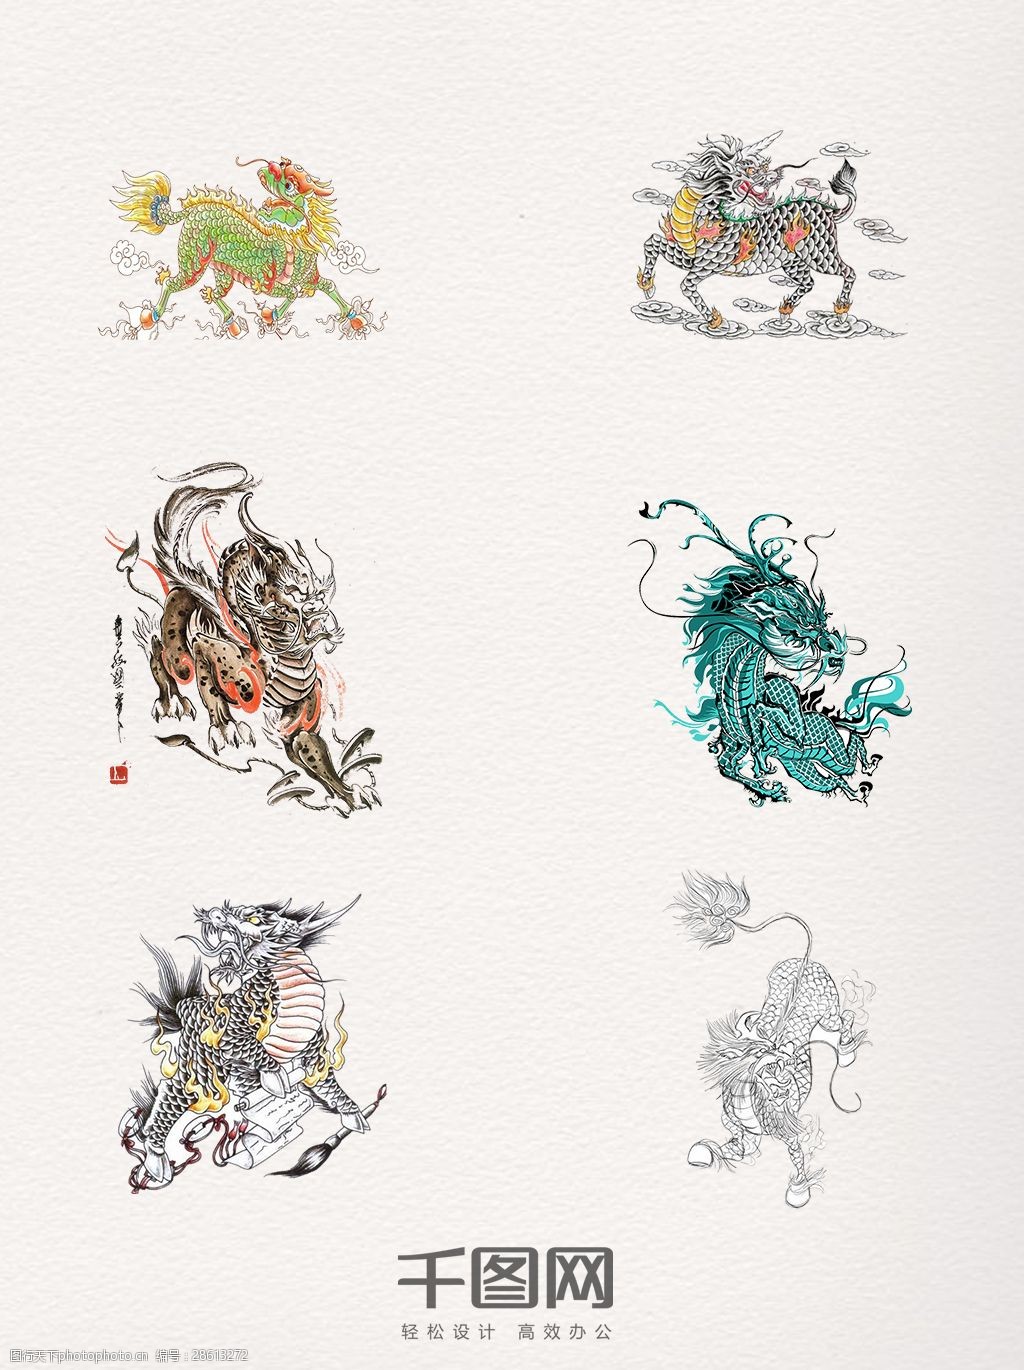 关键词:手绘创意麒麟装饰图 麒麟 彩色 手绘 腾云 创意 四大神兽 中国